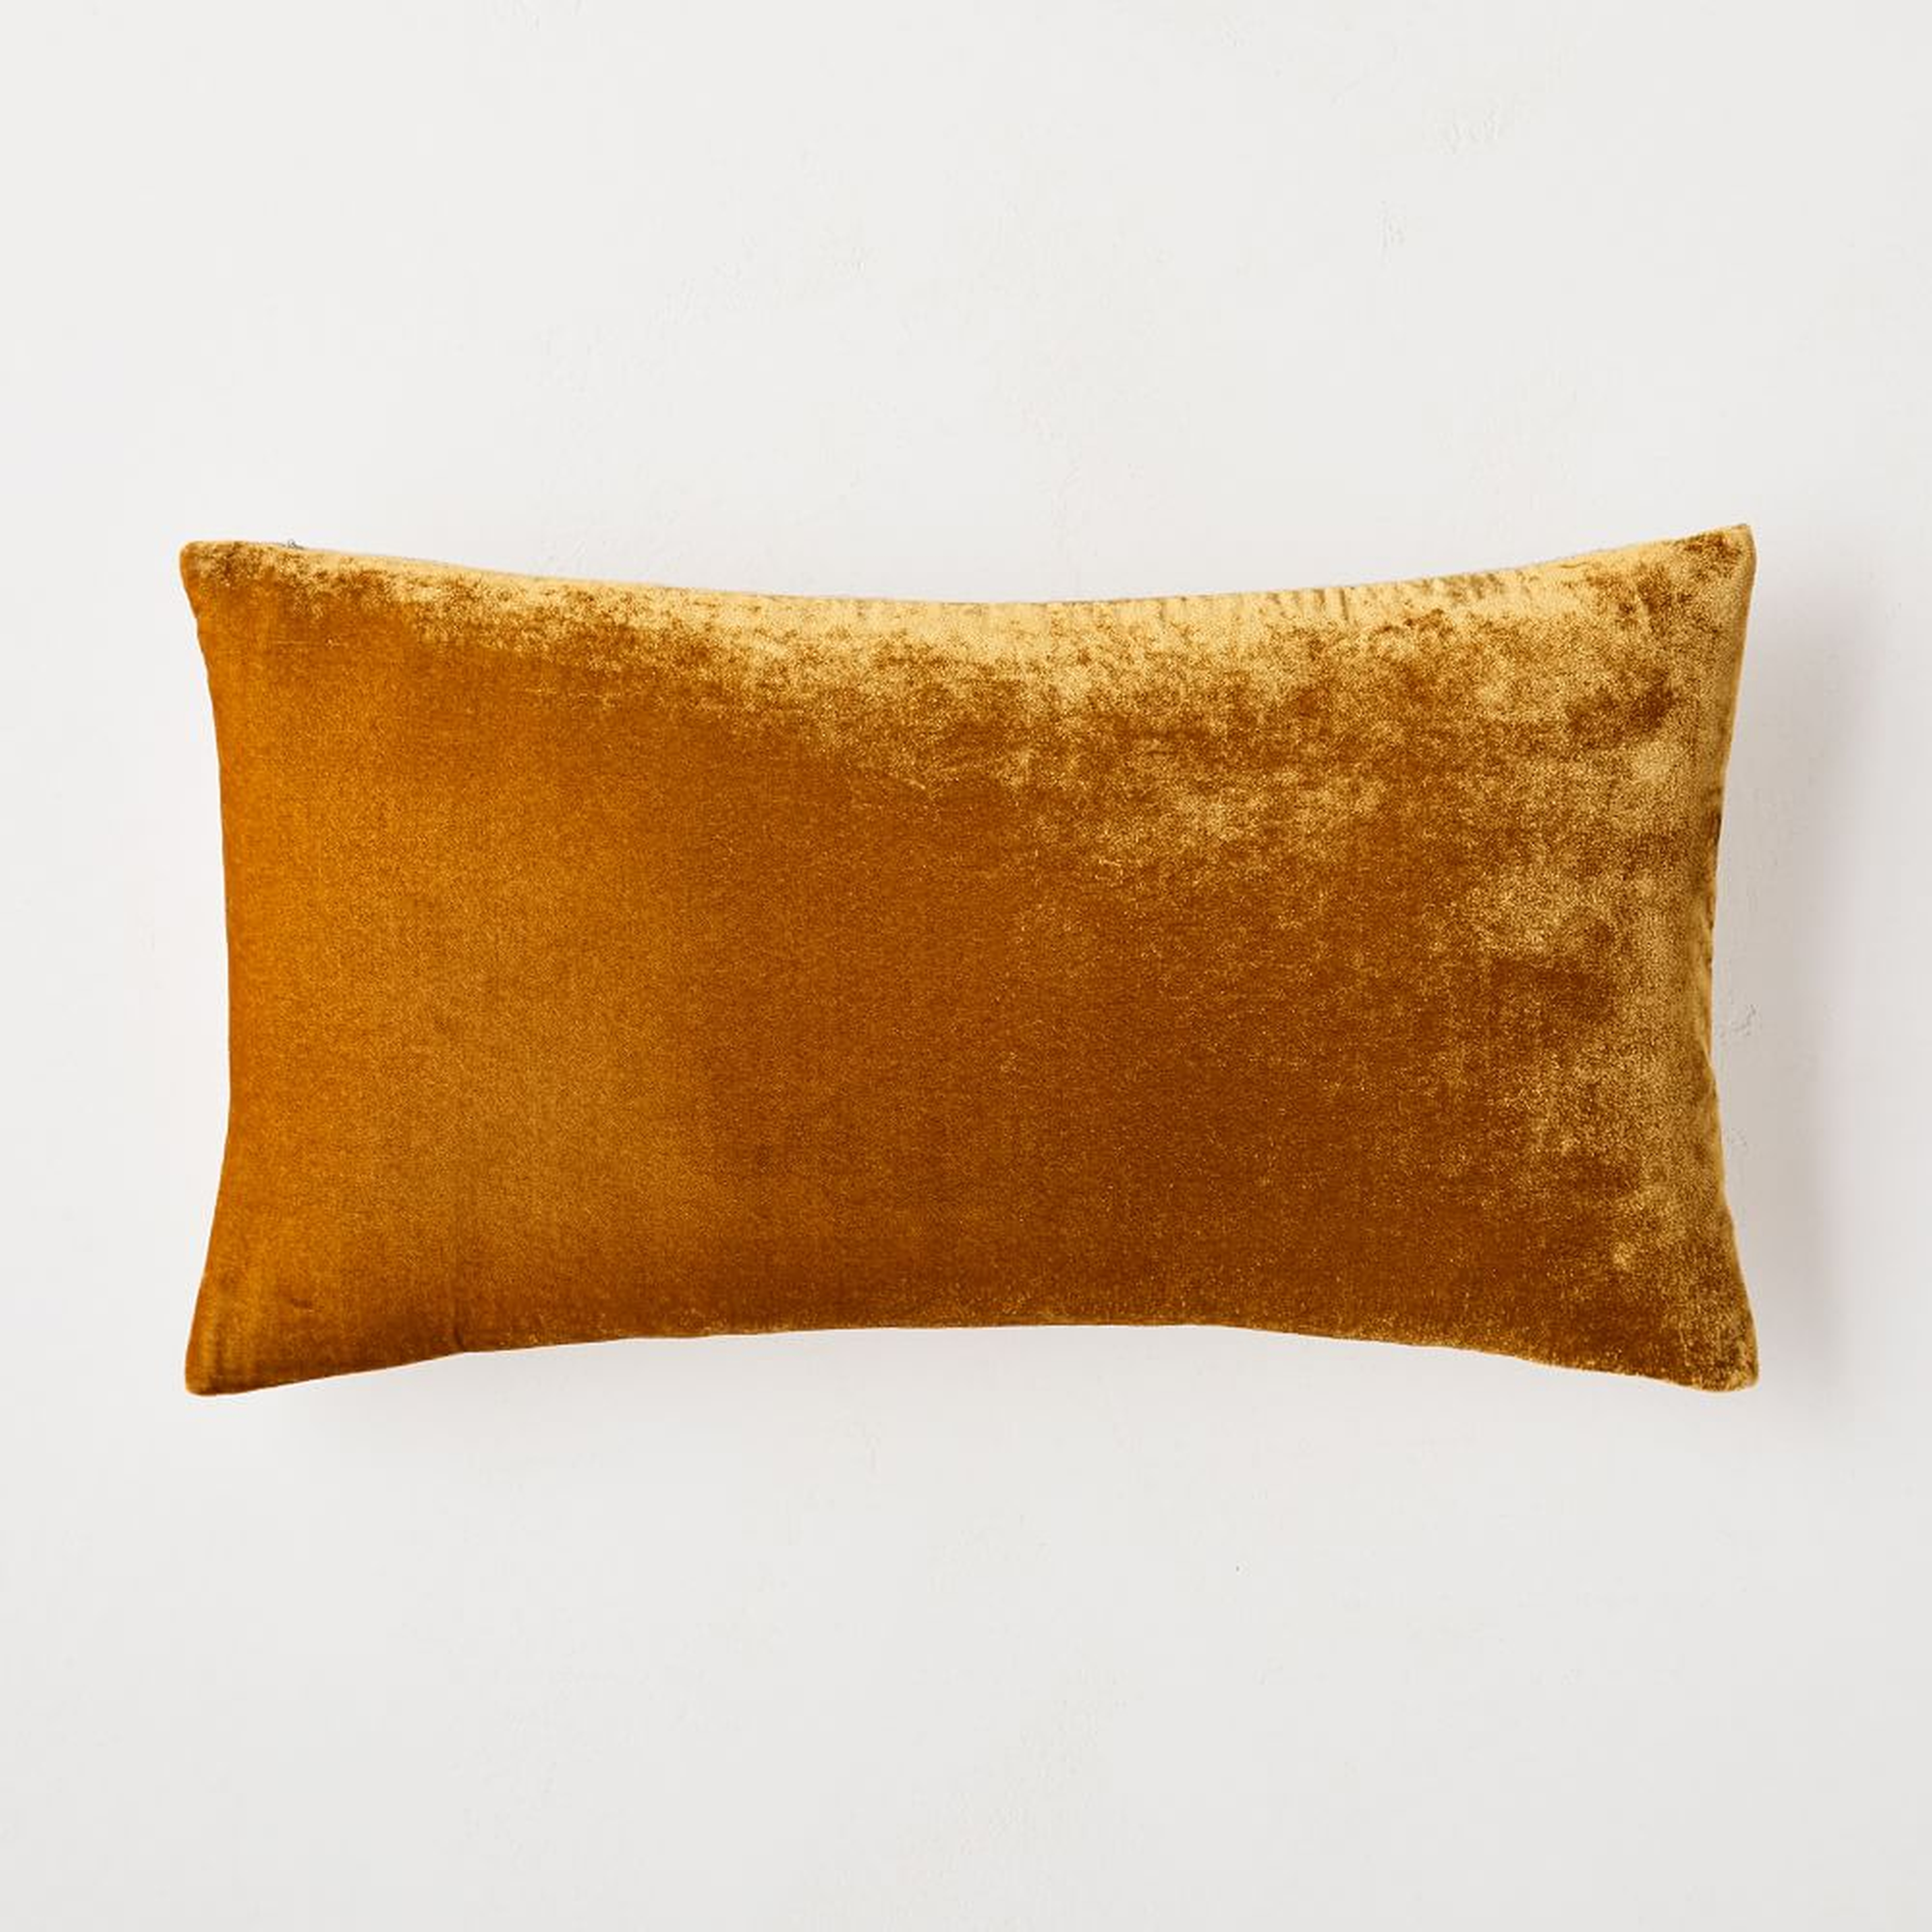 Lush Velvet Pillow Cover, 12"x21", Golden Oak - West Elm